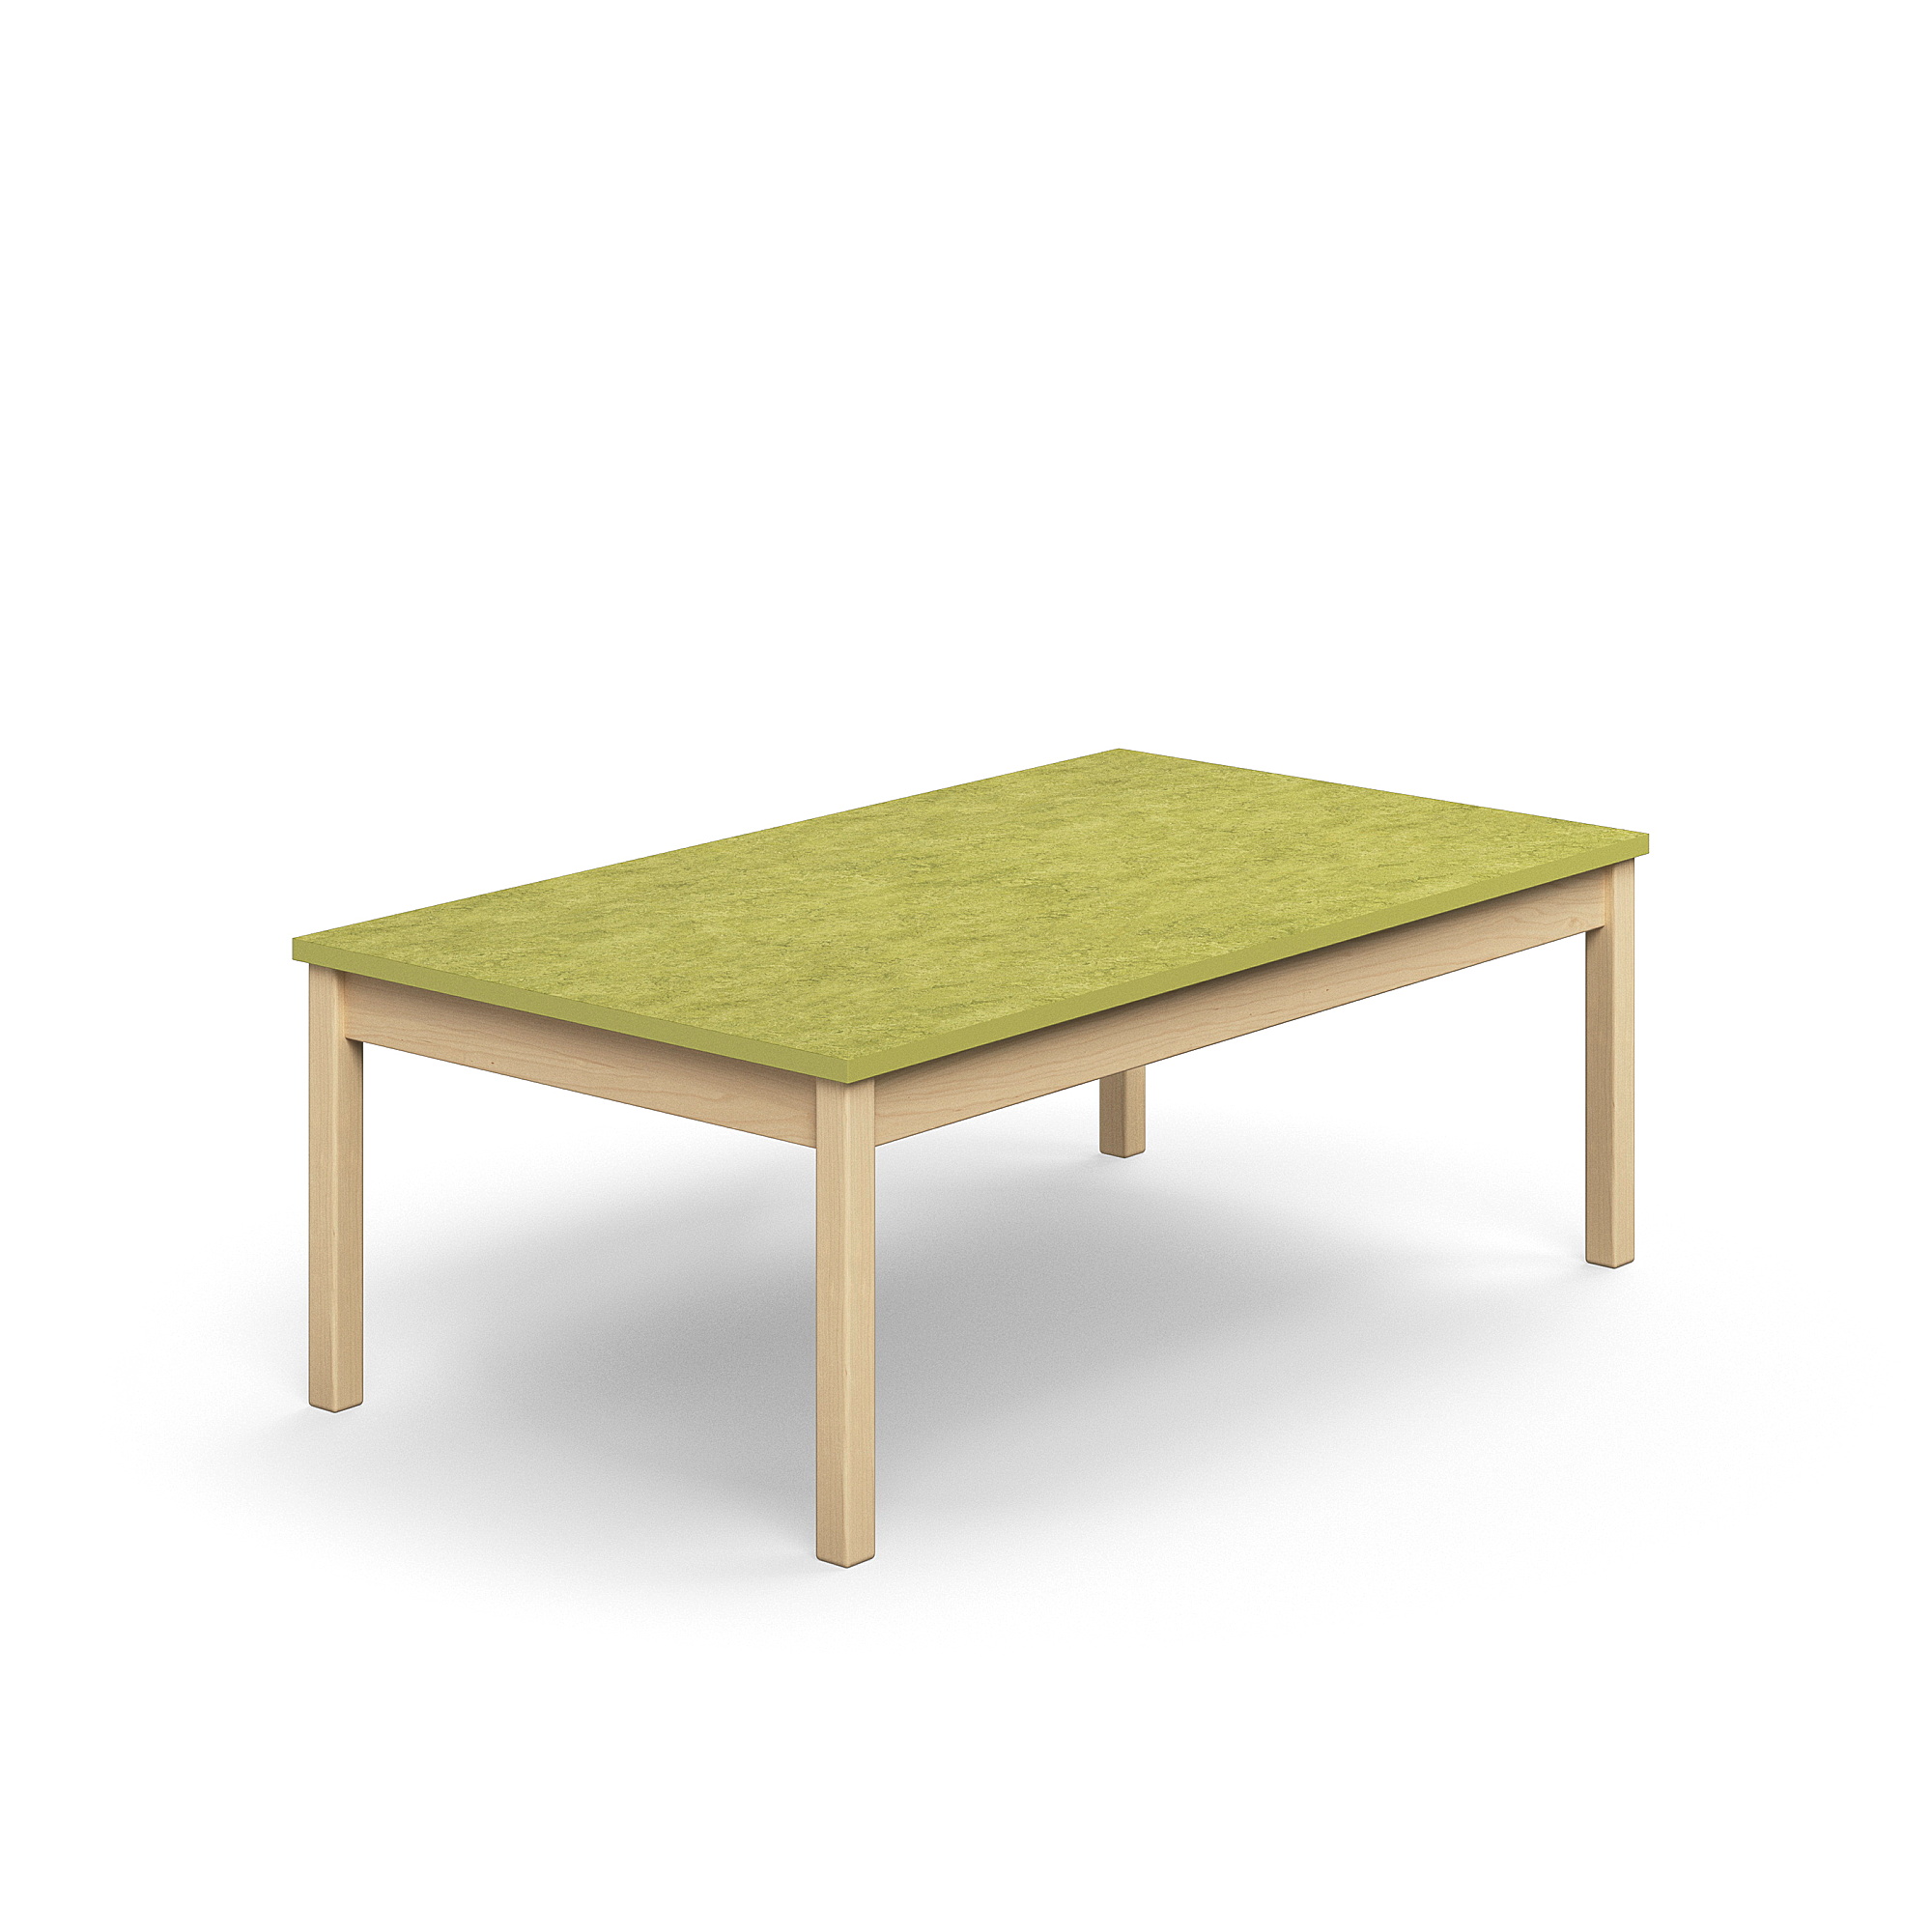 Stůl DECIBEL, 1400x800x530 mm, akustické linoleum, bříza/limetkově zelená